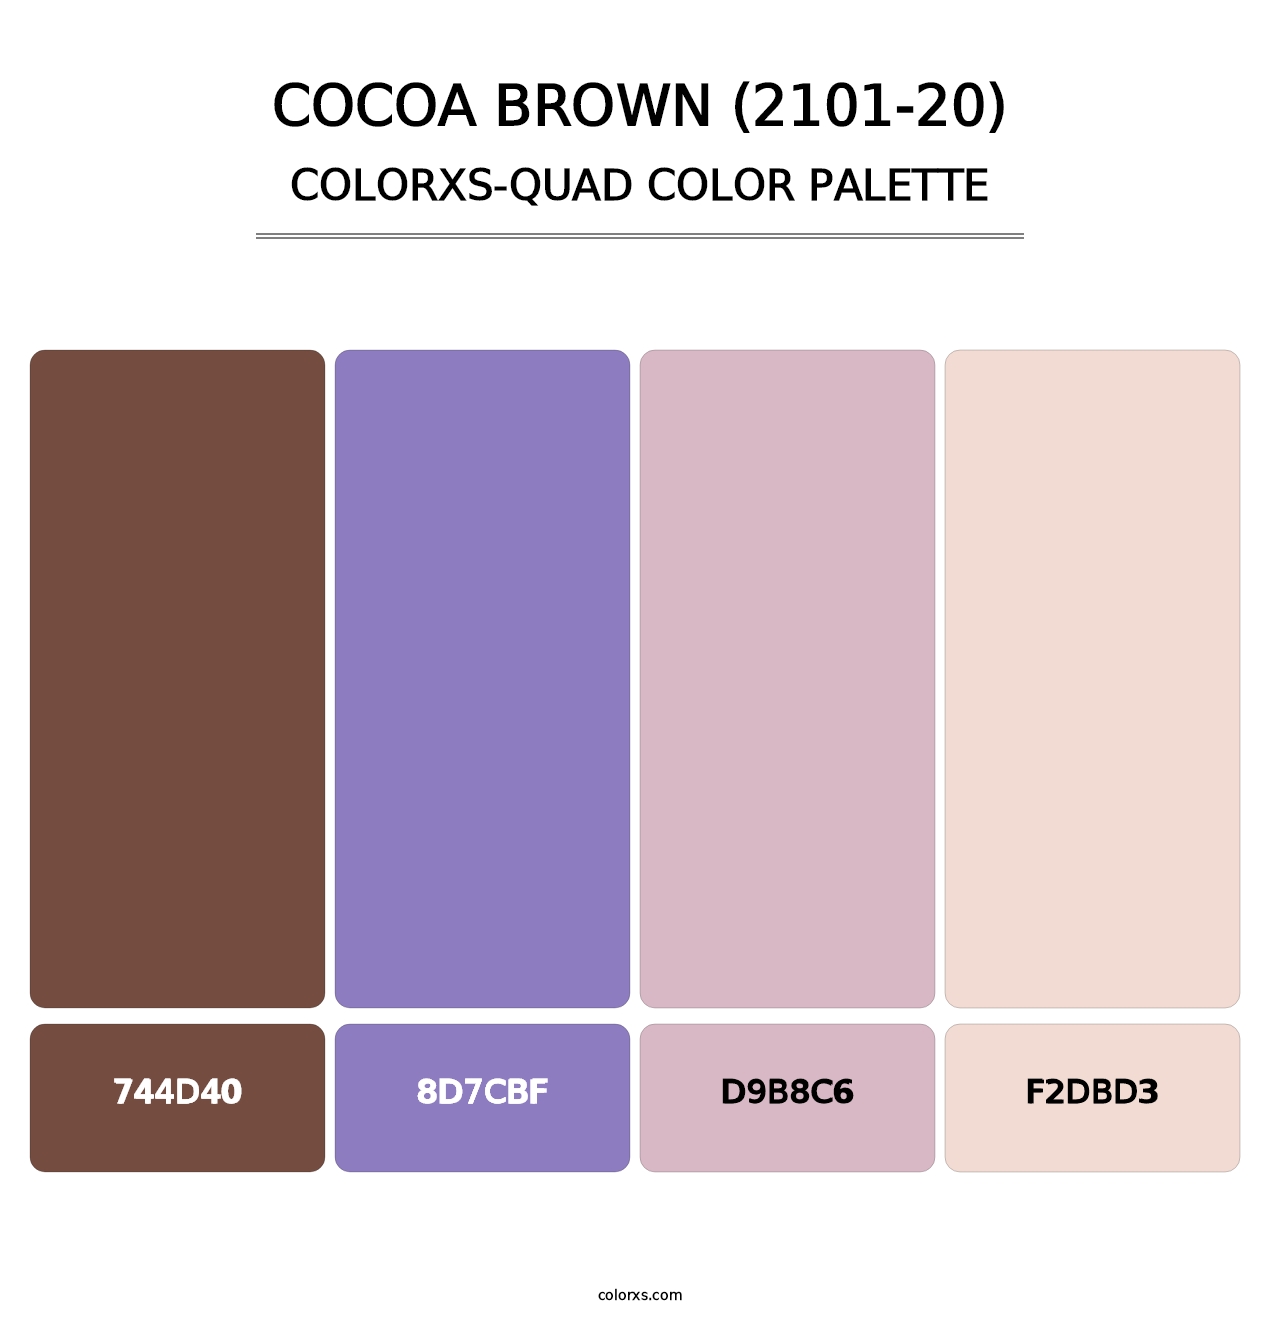 Cocoa Brown (2101-20) - Colorxs Quad Palette